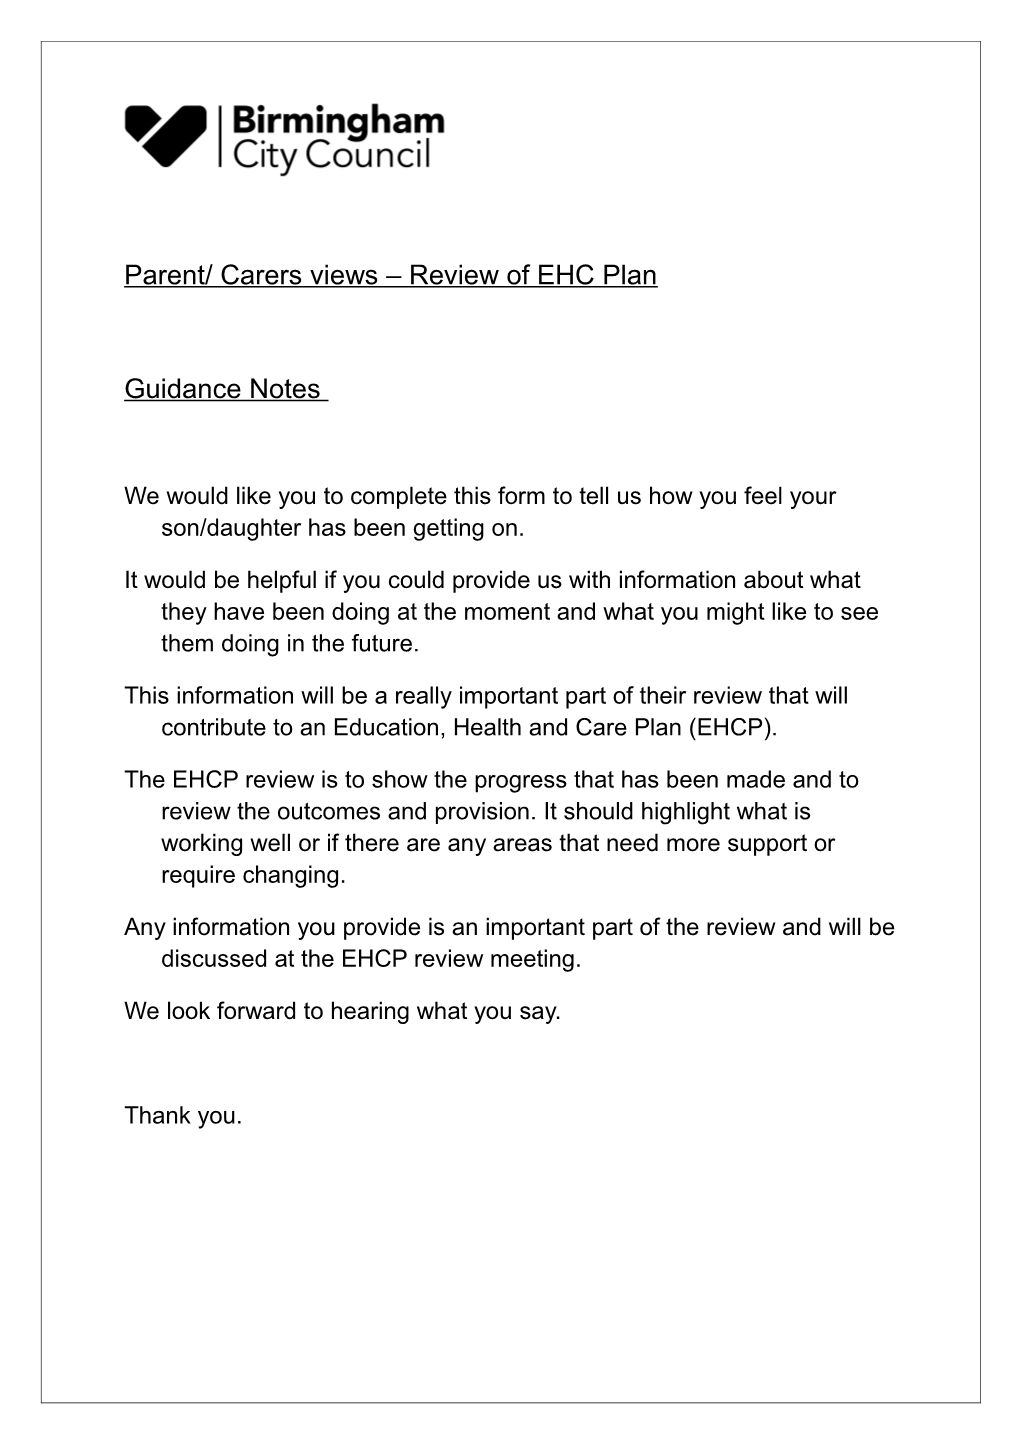 Parent/ Carers Views Review of EHC Plan